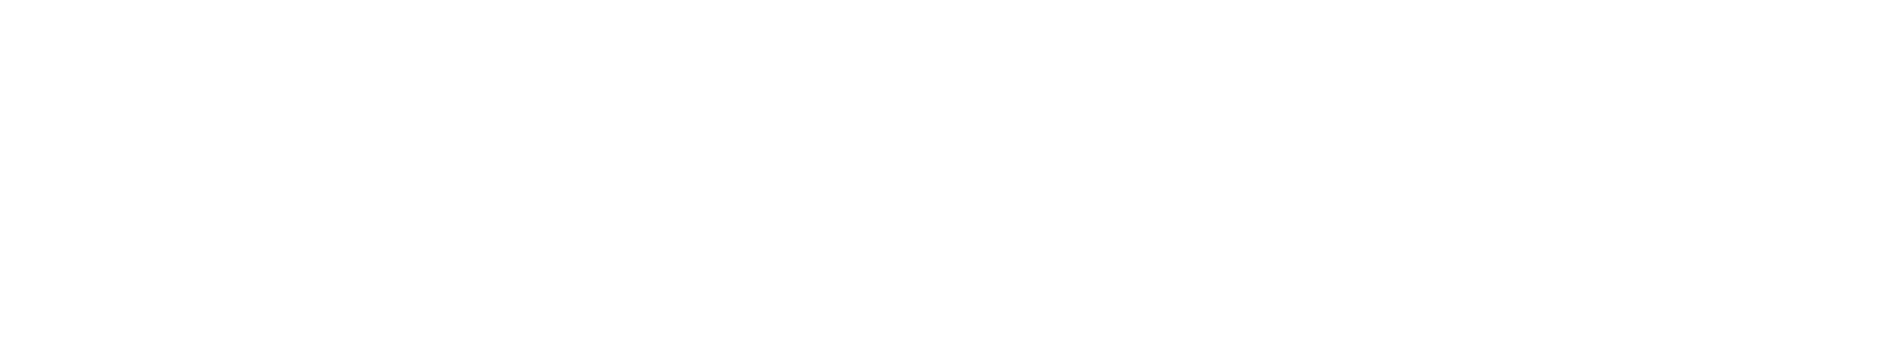 honeywell-logo-jpg.jpeg